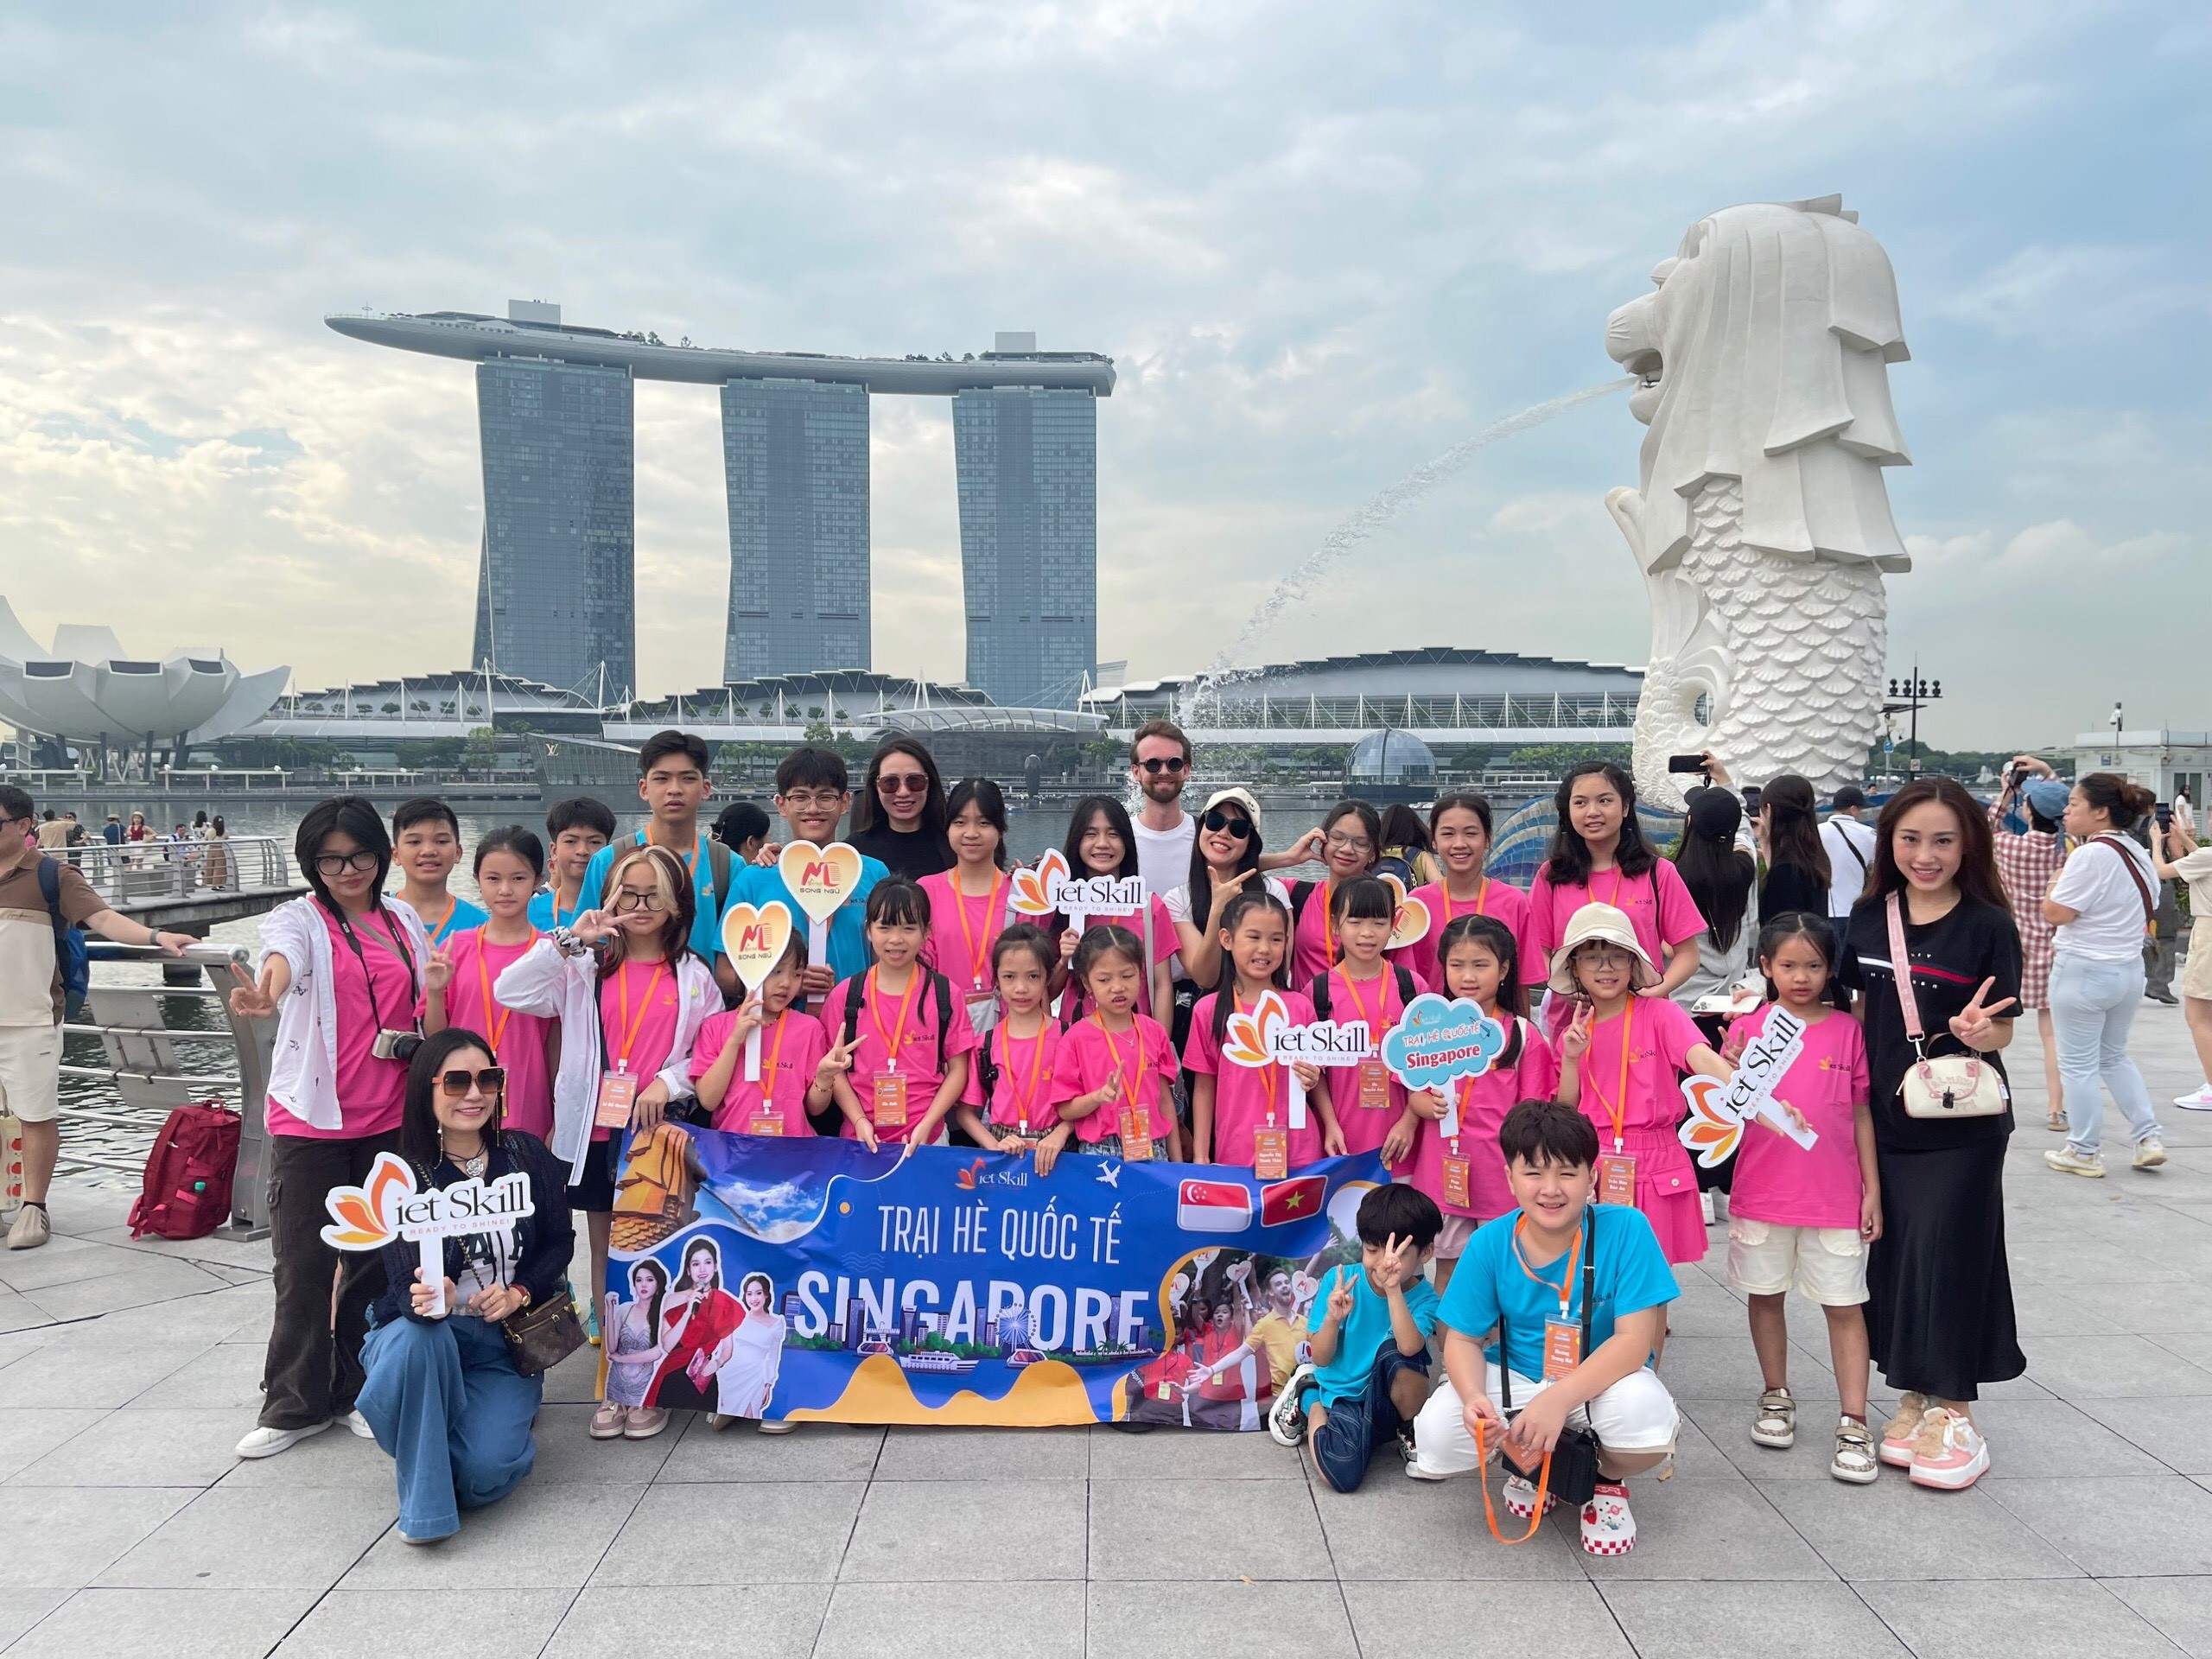 Trại hè quốc tế Singapore – cùng Vietskill tăng cường kỹ năng hội nhập 